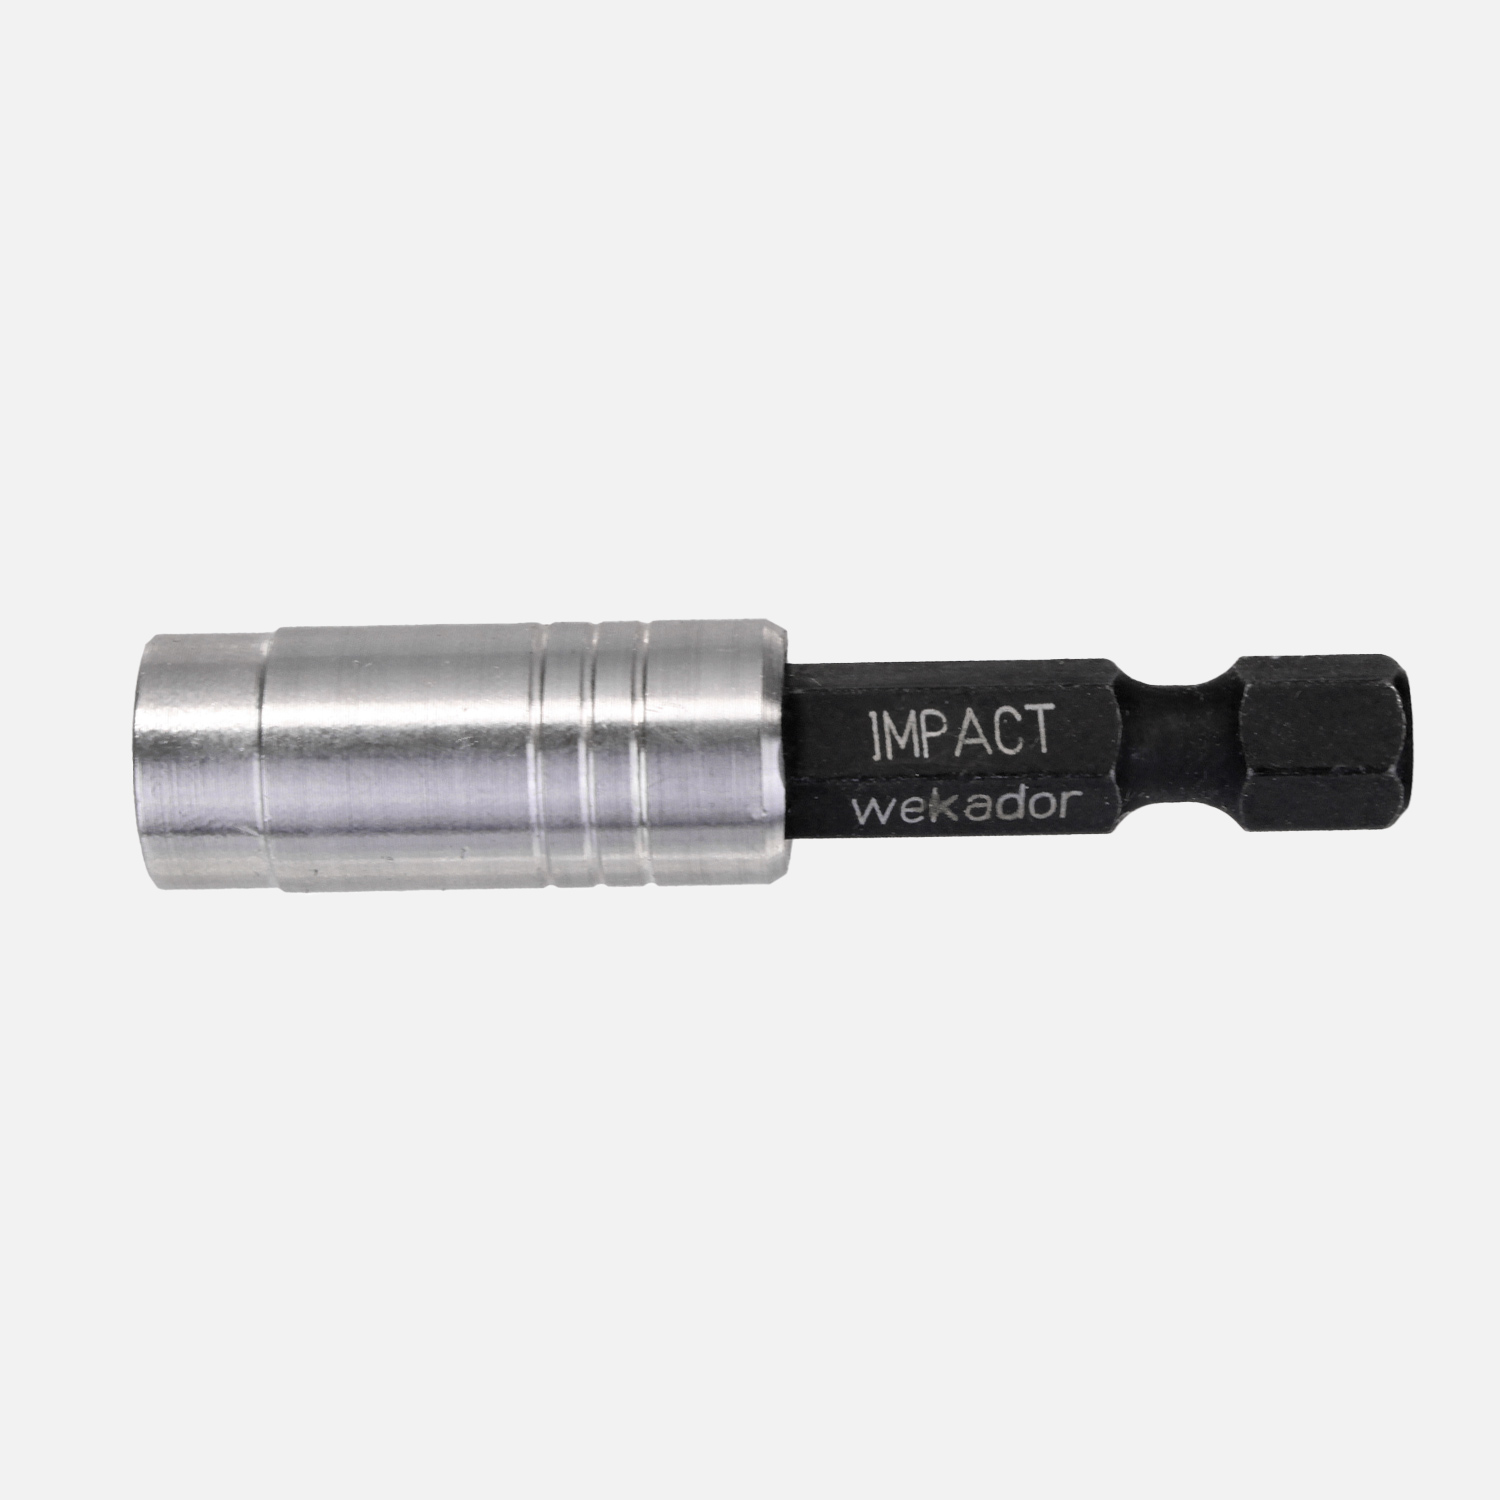 1 Magnetbithalter IMPACT 1/4" E 6,3 Schlagfest auch für Maschinen geeignet 51 mm